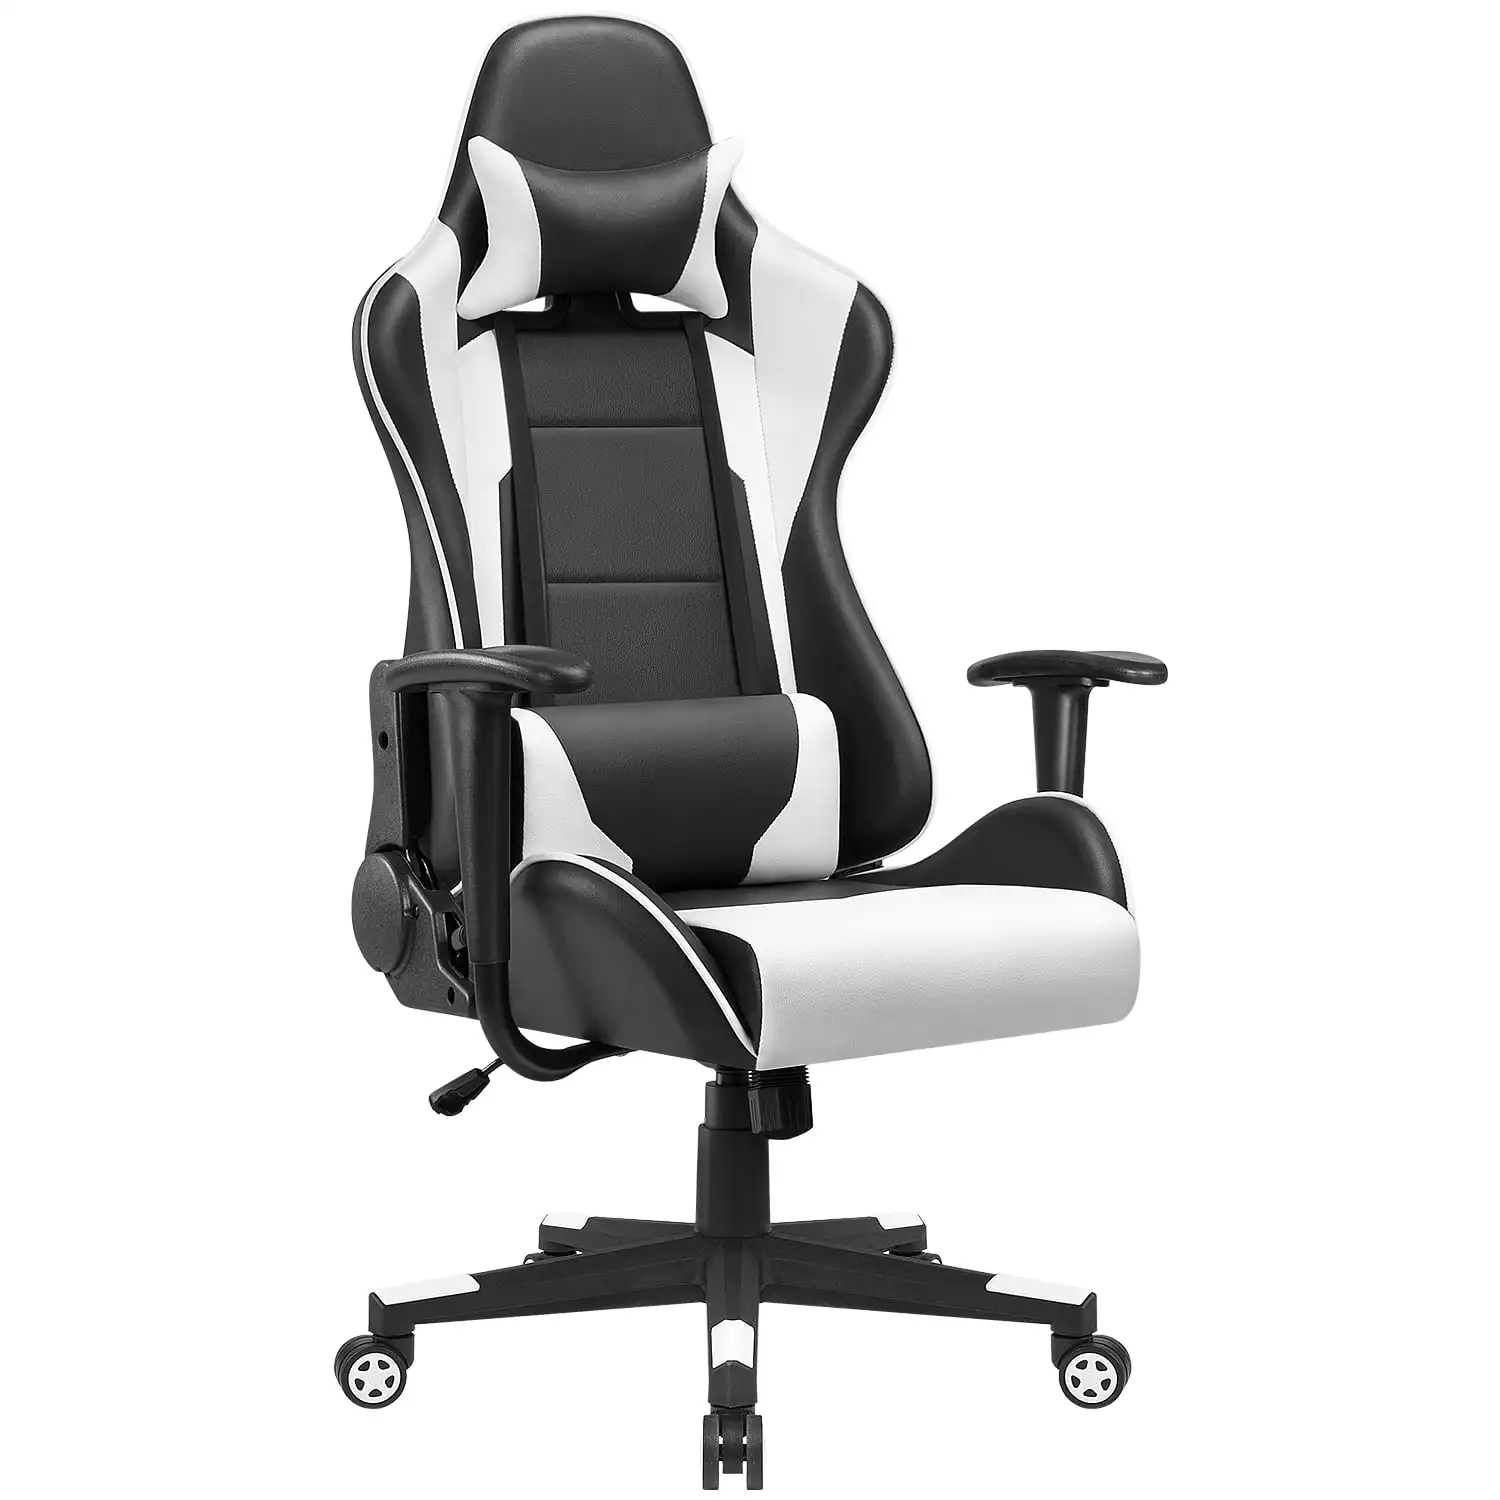 

Игровой стул Lacoo с высокой спинкой, эргономичное вращающееся кресло с подголовником, белый стул для геймера